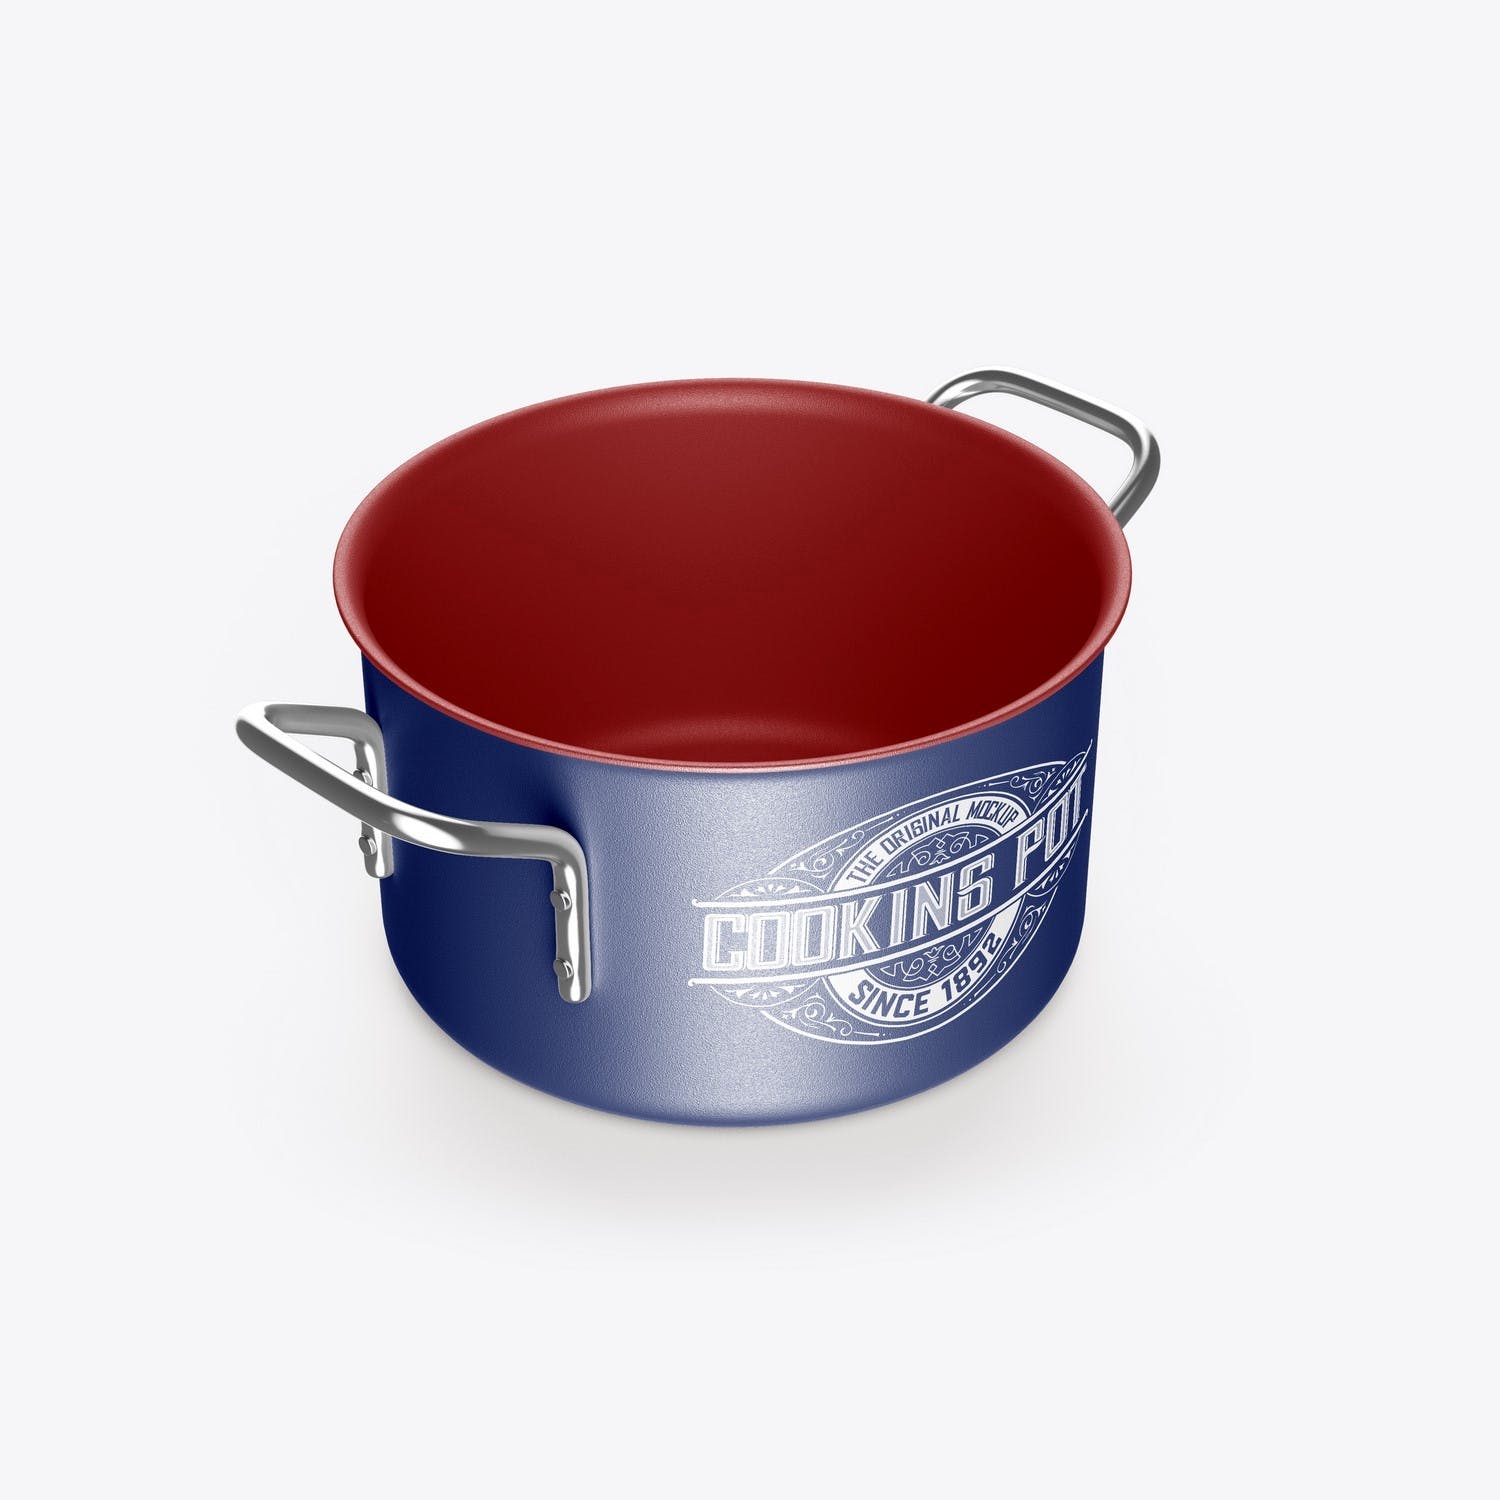 143 烹饪蒸锅产品设计样机 Cooking Pot Mockup